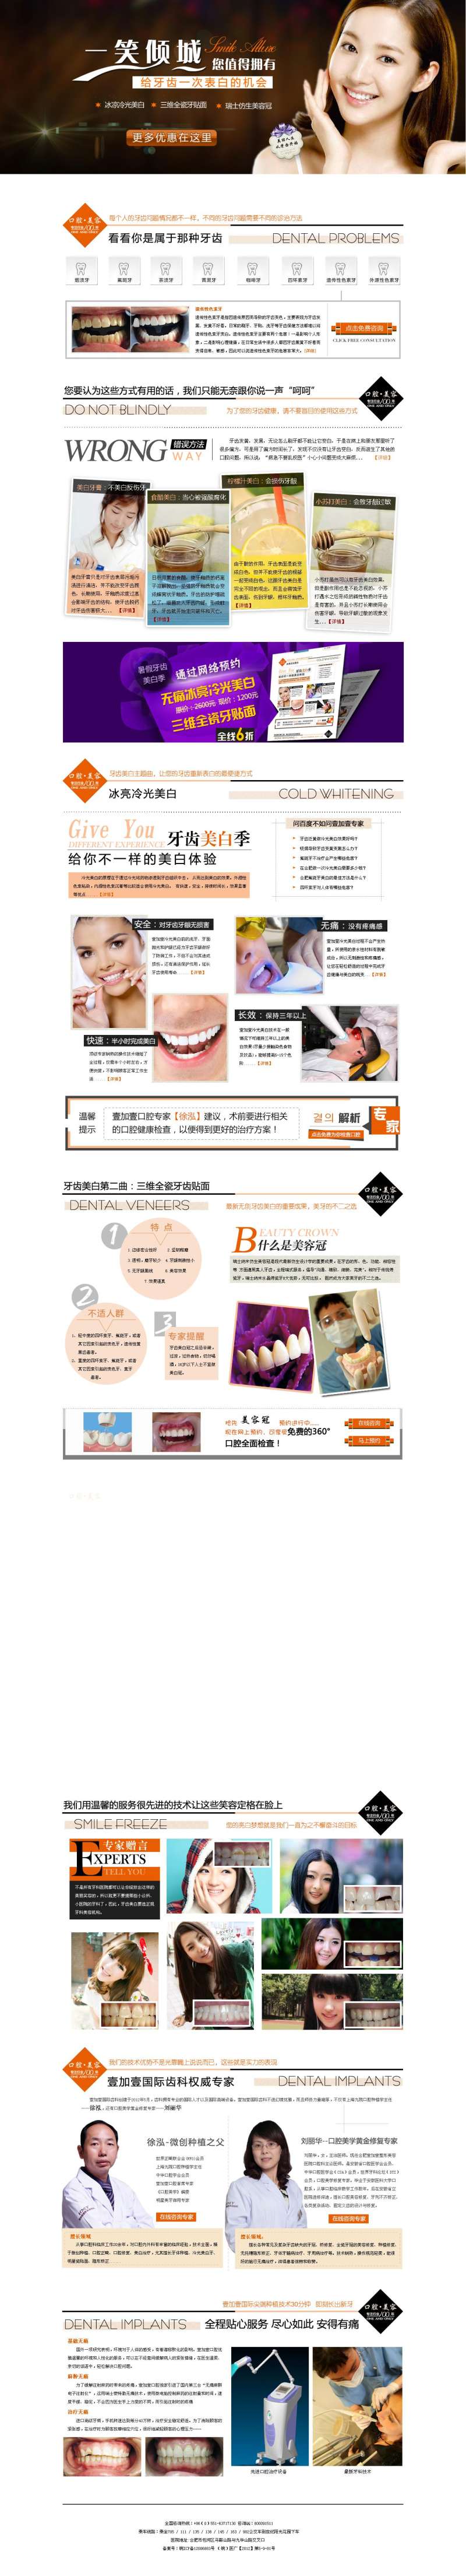 偏时尚医疗美白牙齿优惠活动专题网页模板psd下载